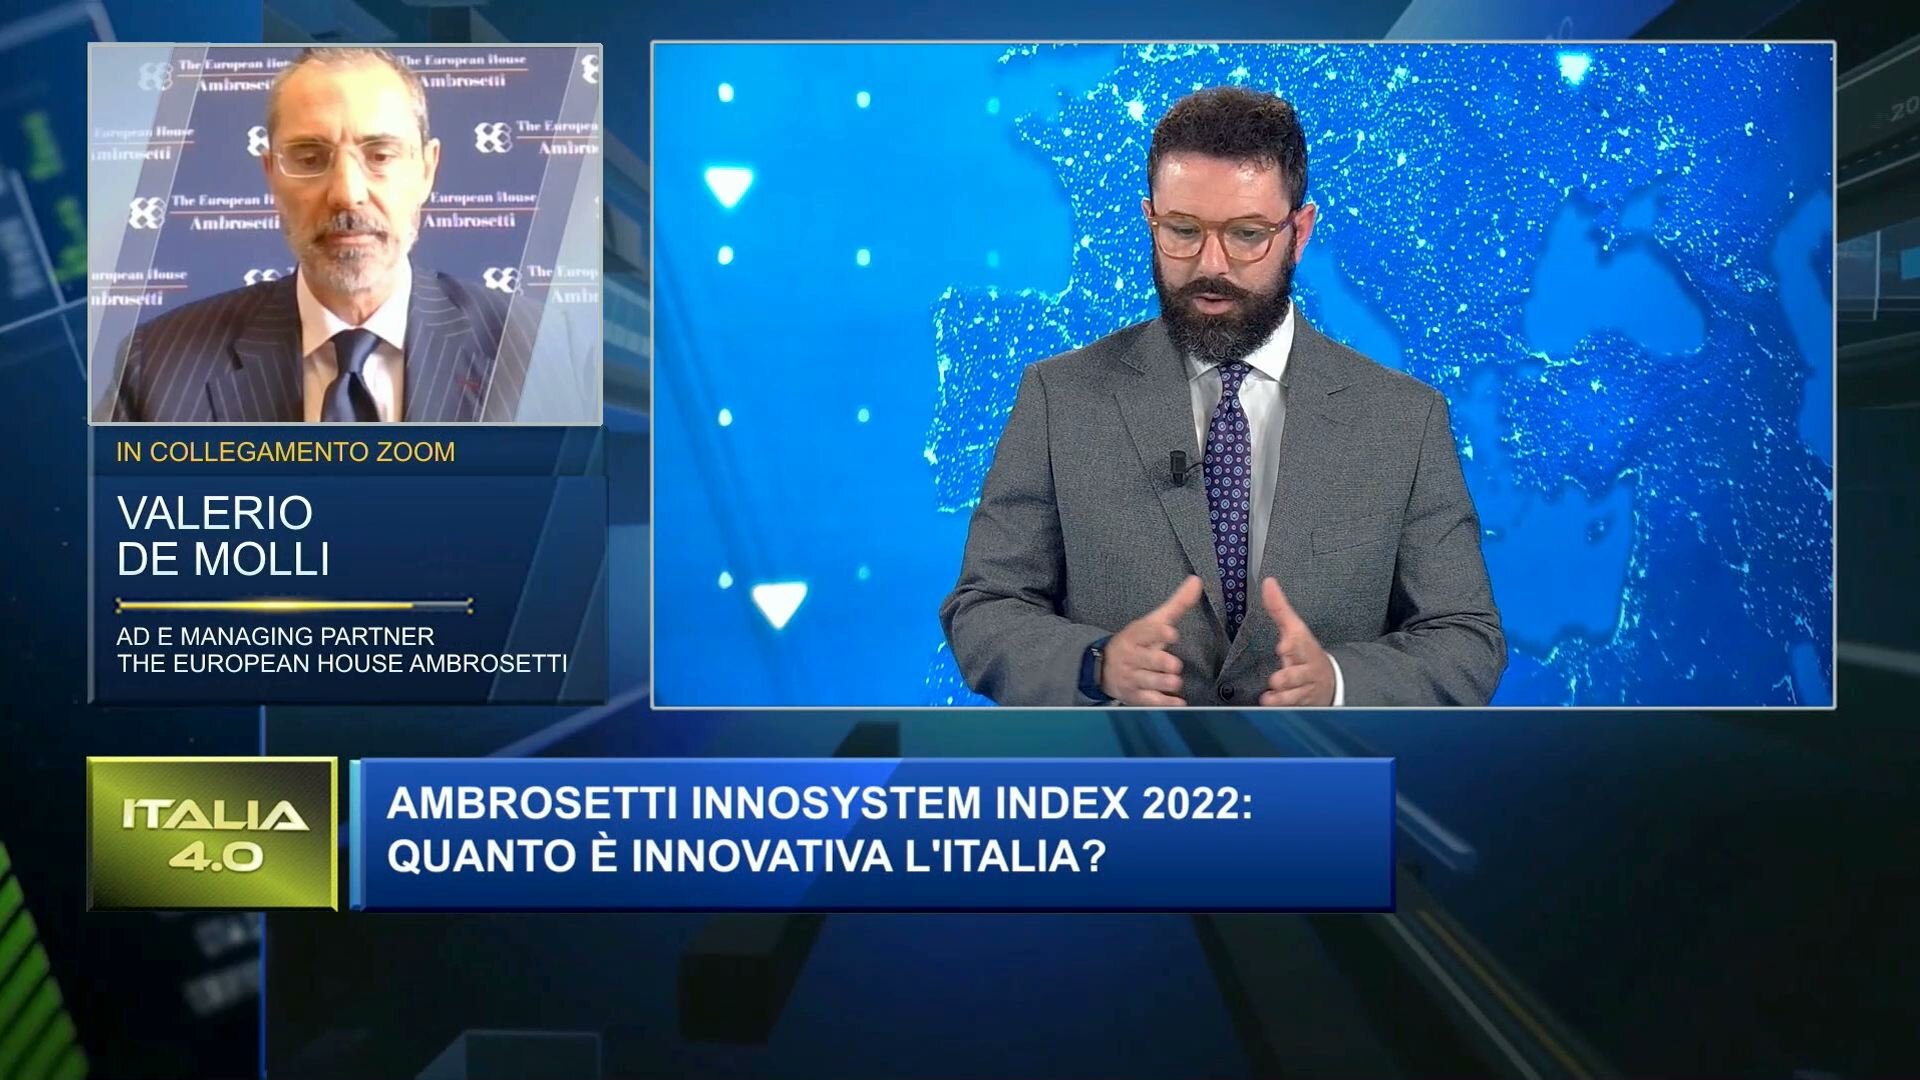 Ambrosetti Innosystem Index 2022: quanto è innovativa l'Italia?